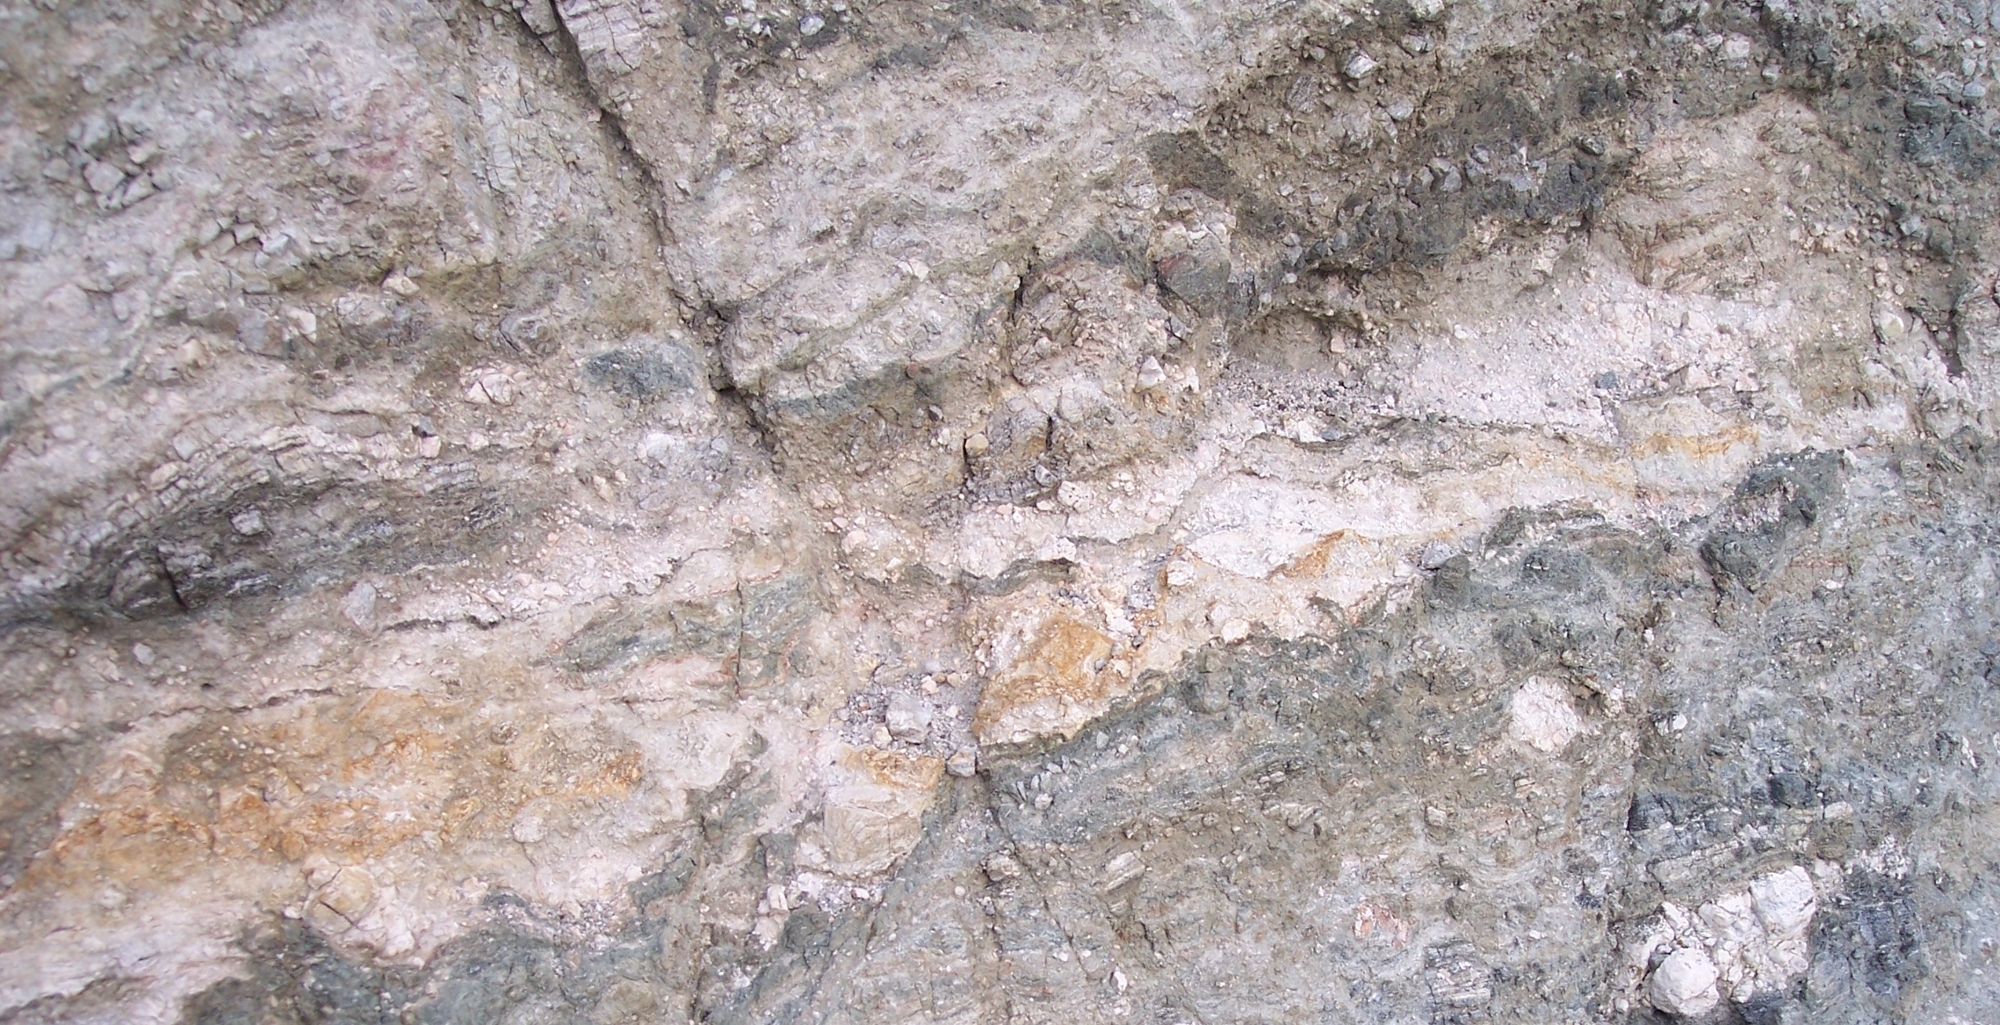 Whitewater – weathered Granite?